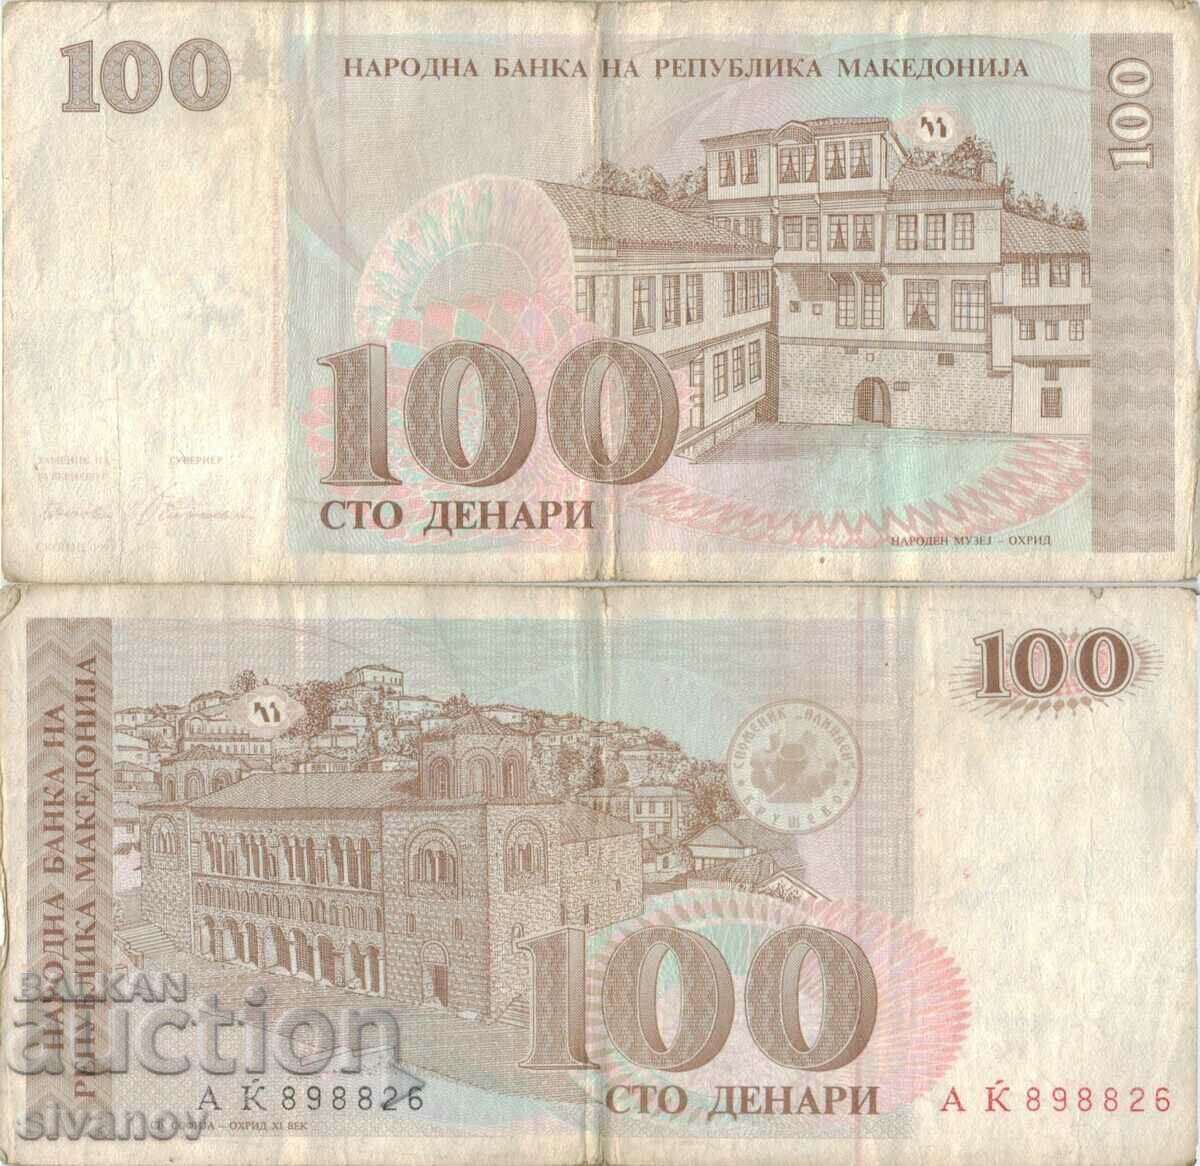 Macedonia 100 denars 1993 banknote #5223